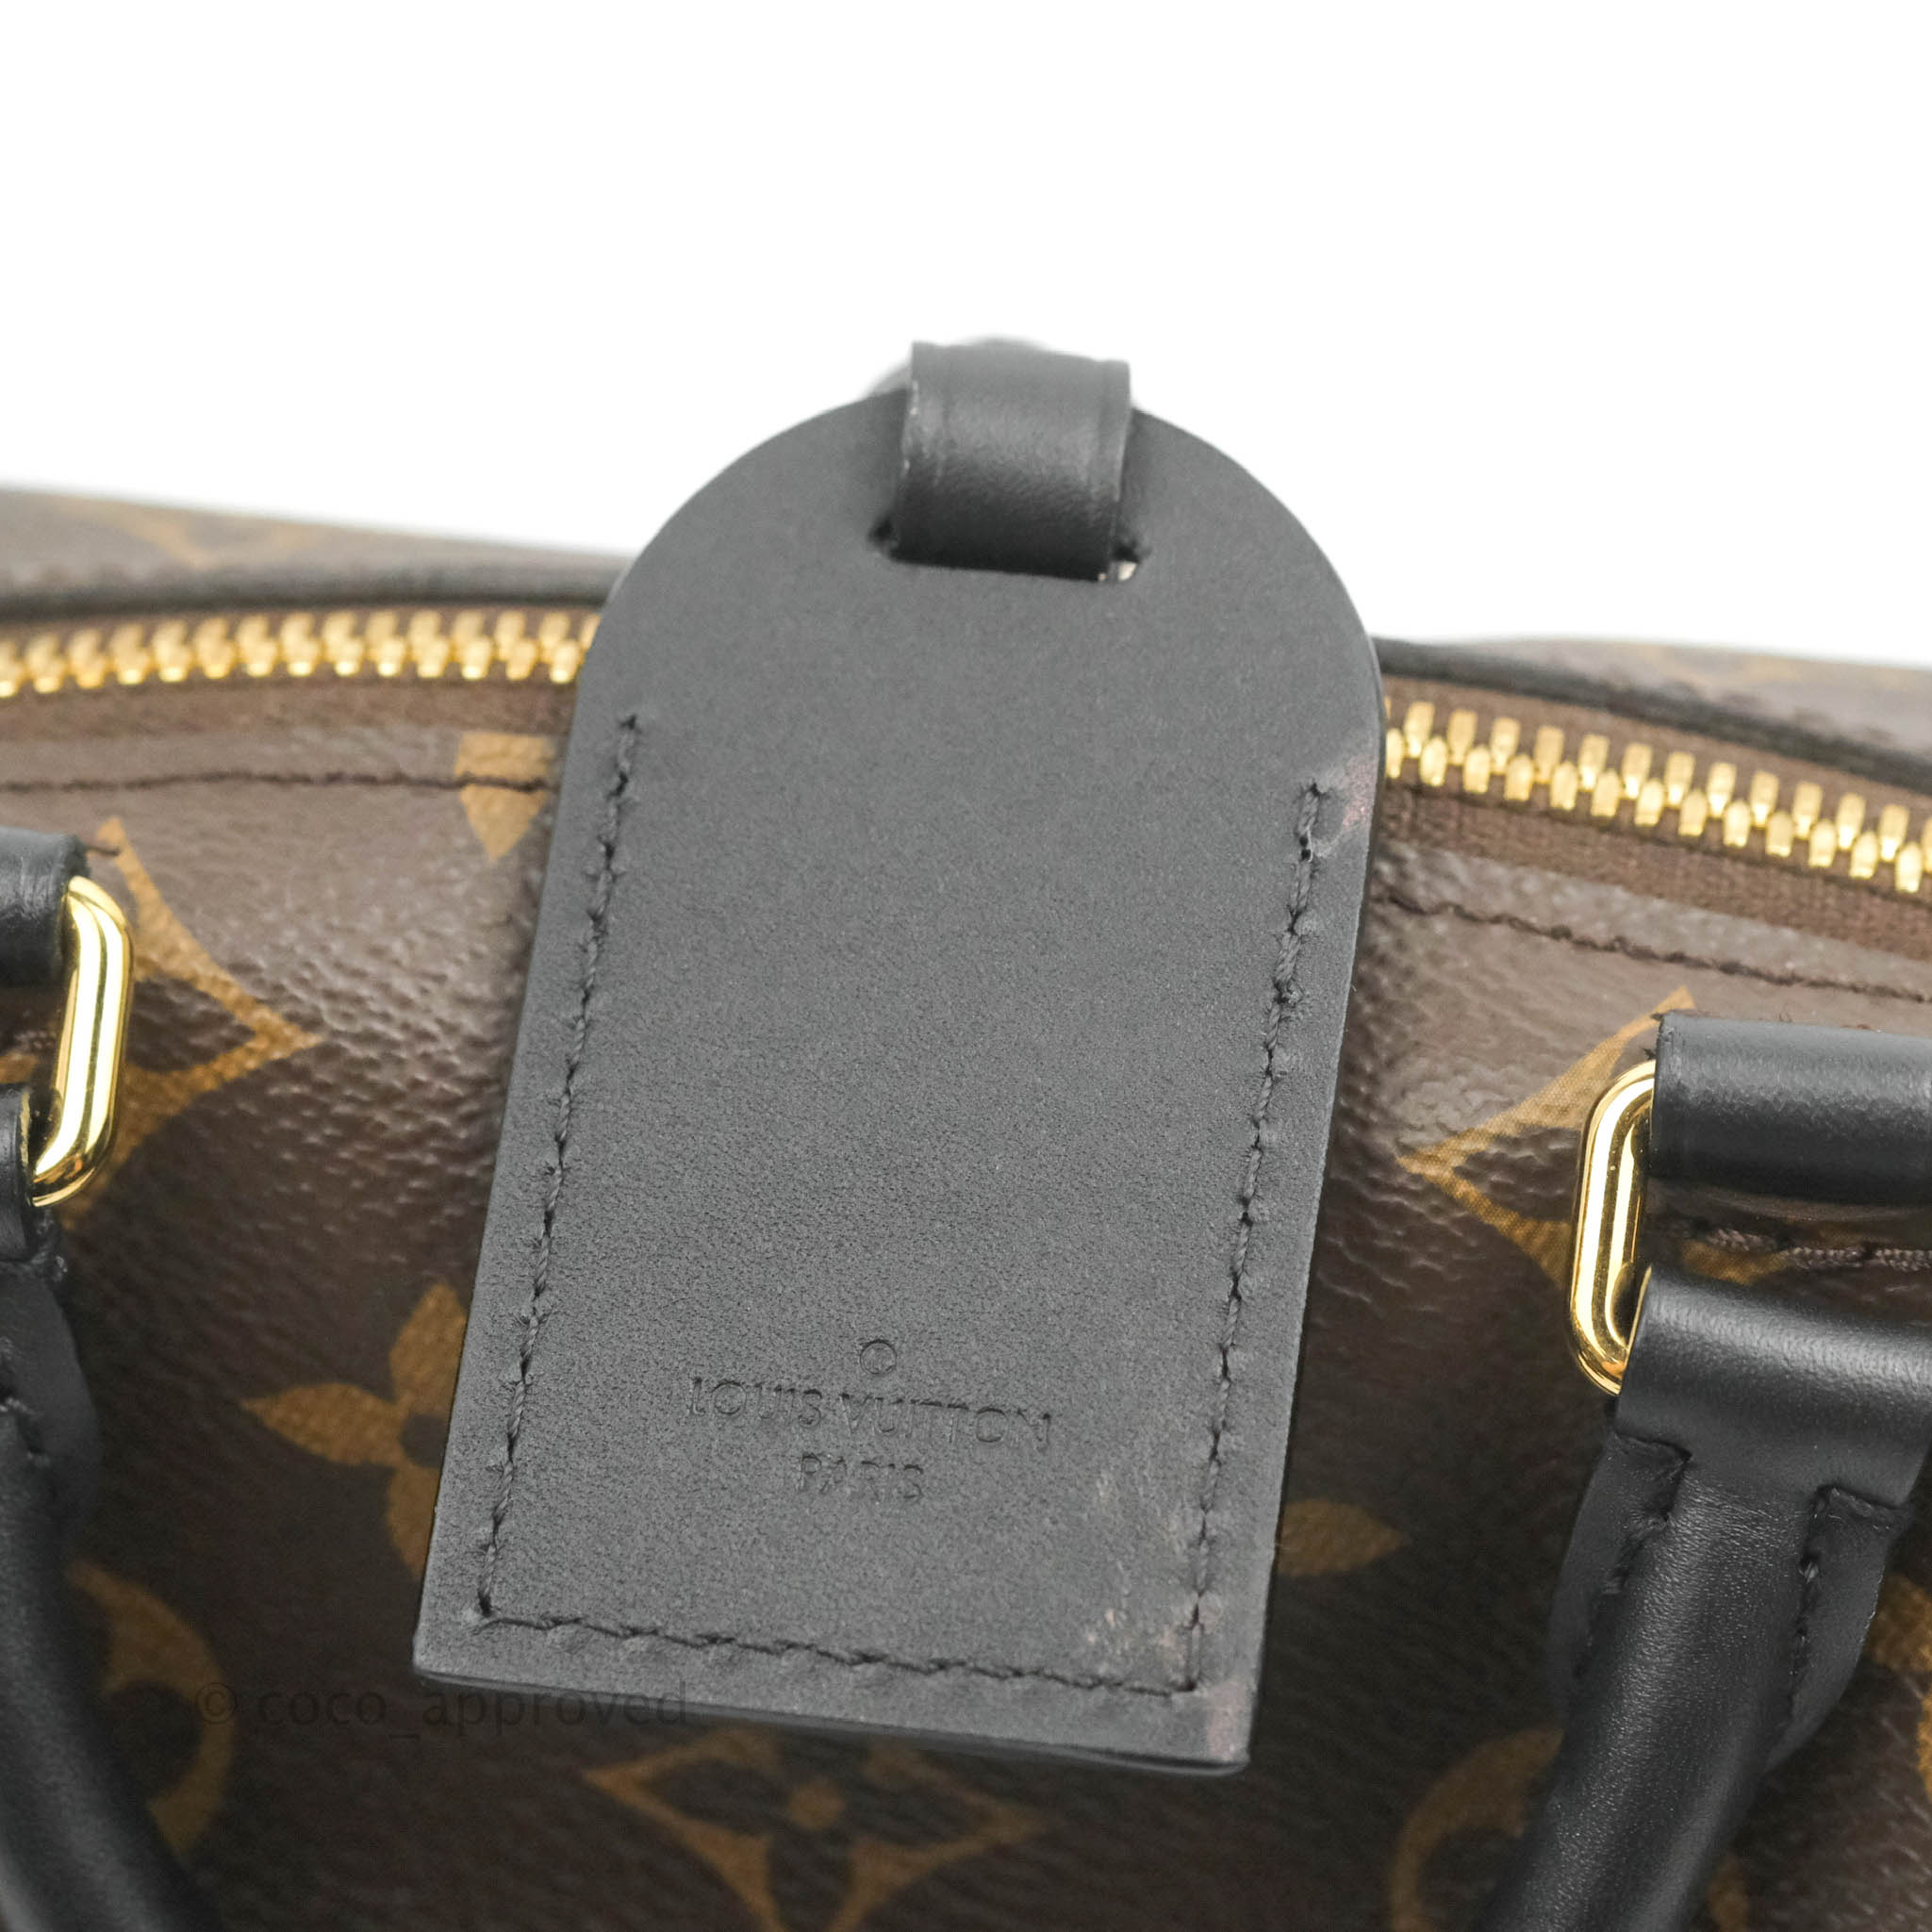 Louis Vuitton Petite Malle Souple Handbag Monogram Canvas Black 2226291